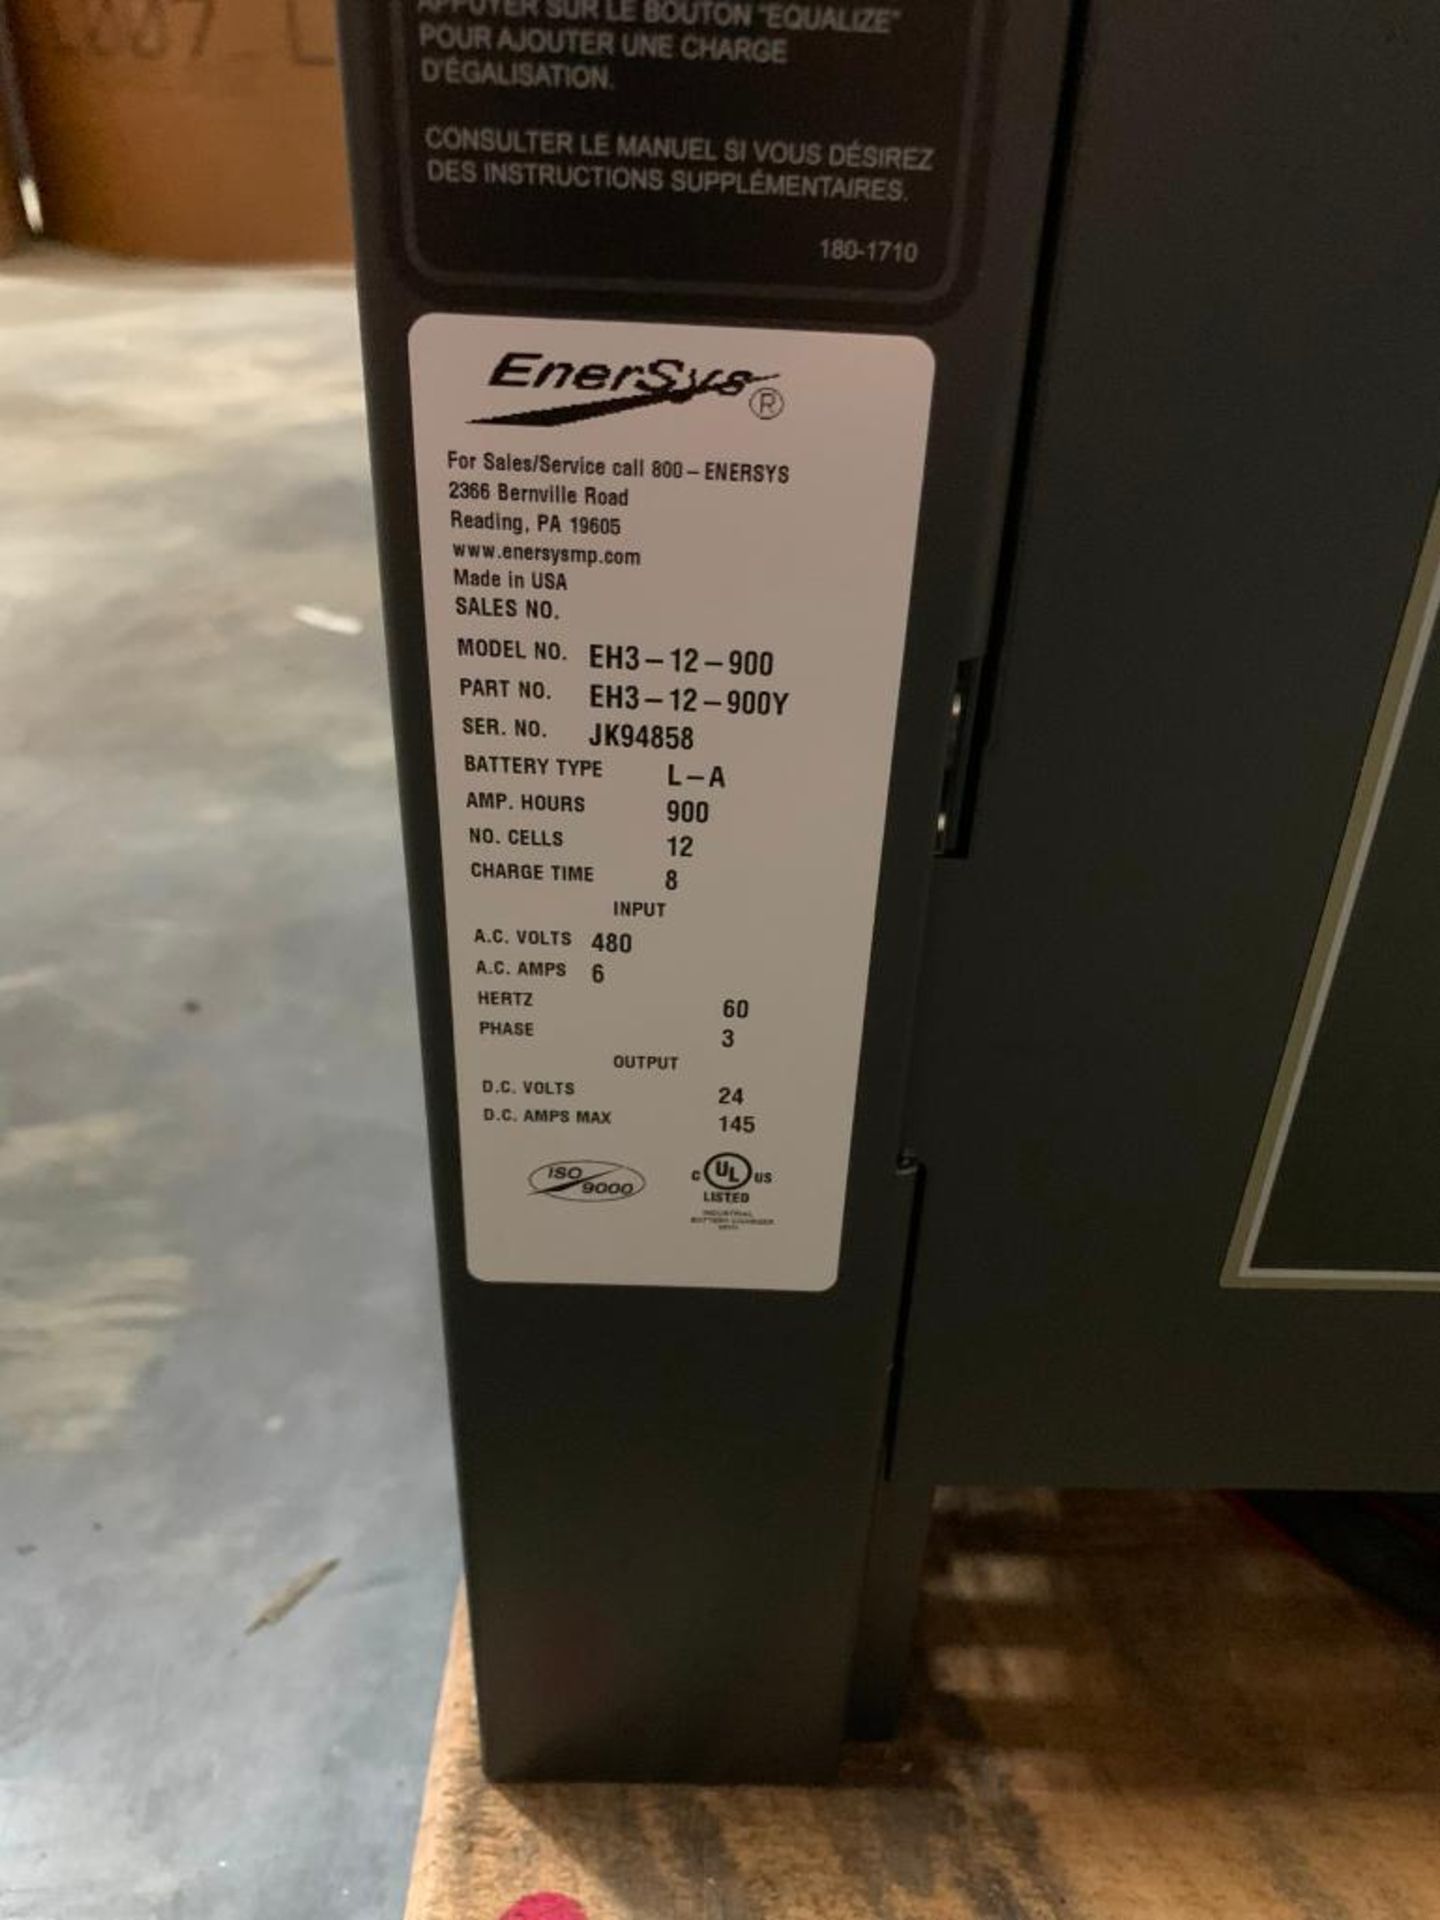 Enersys Enforcer 24V Battery Charger, Model EH3-12-900, S/N JK94858 - Image 3 of 3